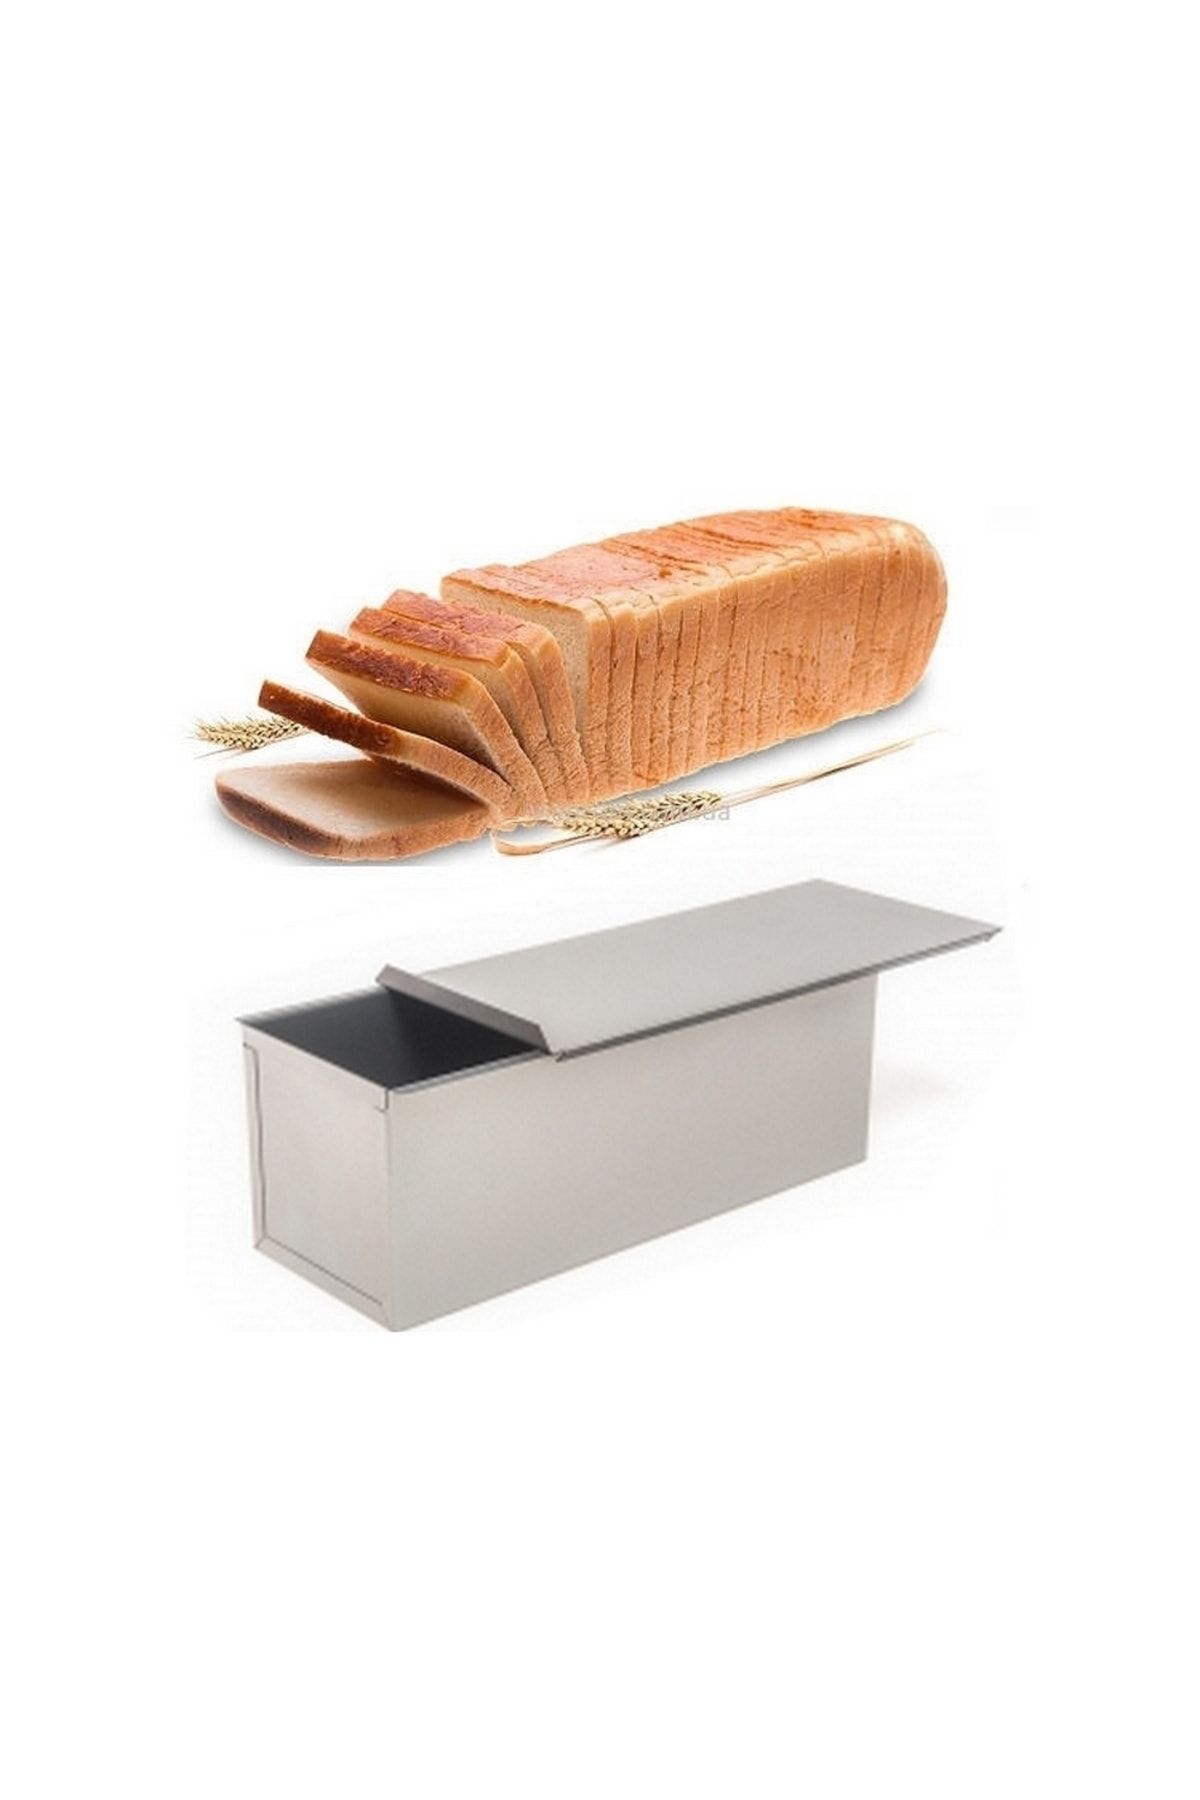 Nar kalıp Narkalıp Baton Tost & Ekmek Kalıbı Kapaklı (10X10X25 CM) Paslanmaz Çelik